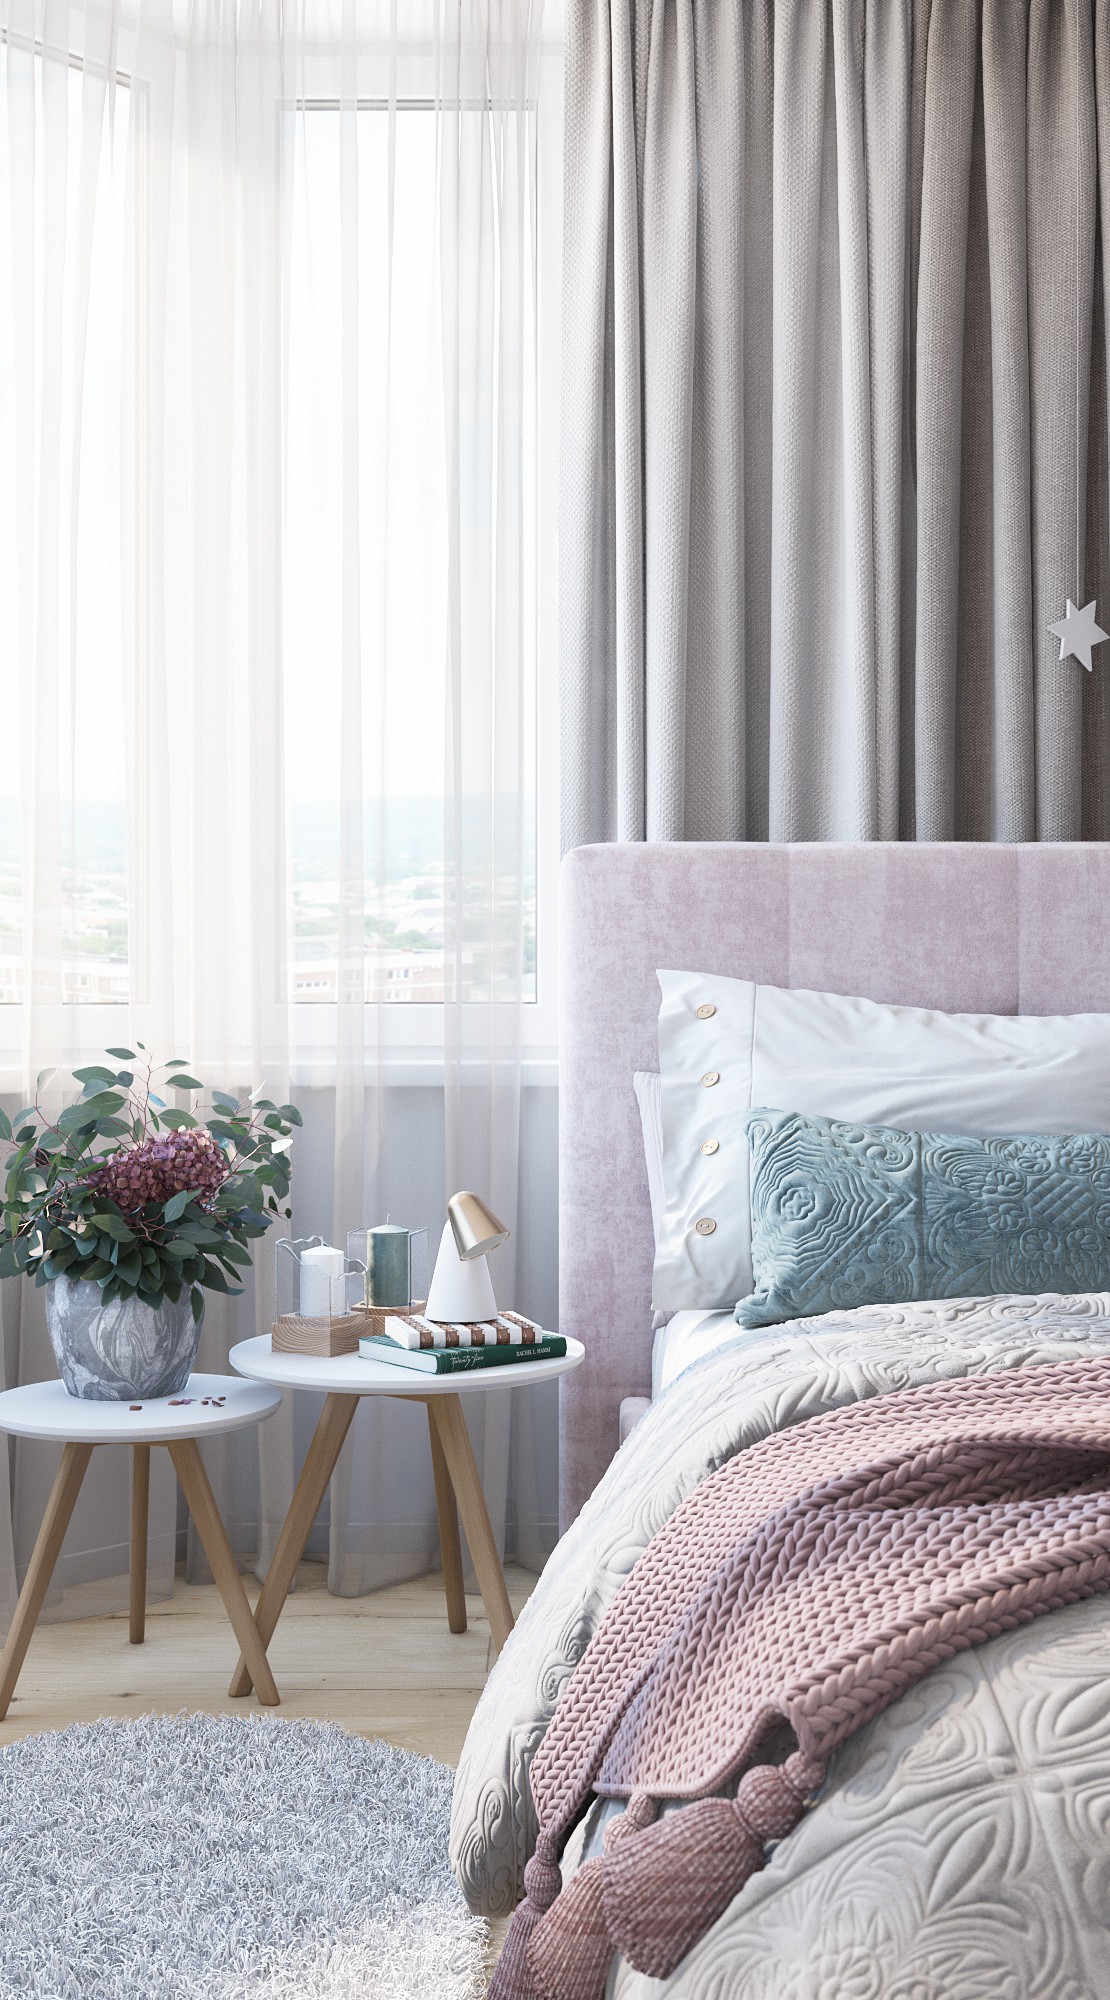 Hình ảnh cận cảnh đầu giường ngủ với bộ đôi bàn tròn đặt bình hoa trang trí, ga gối tông màu pastel, rèm cửa màu trắng mỏng mảnh